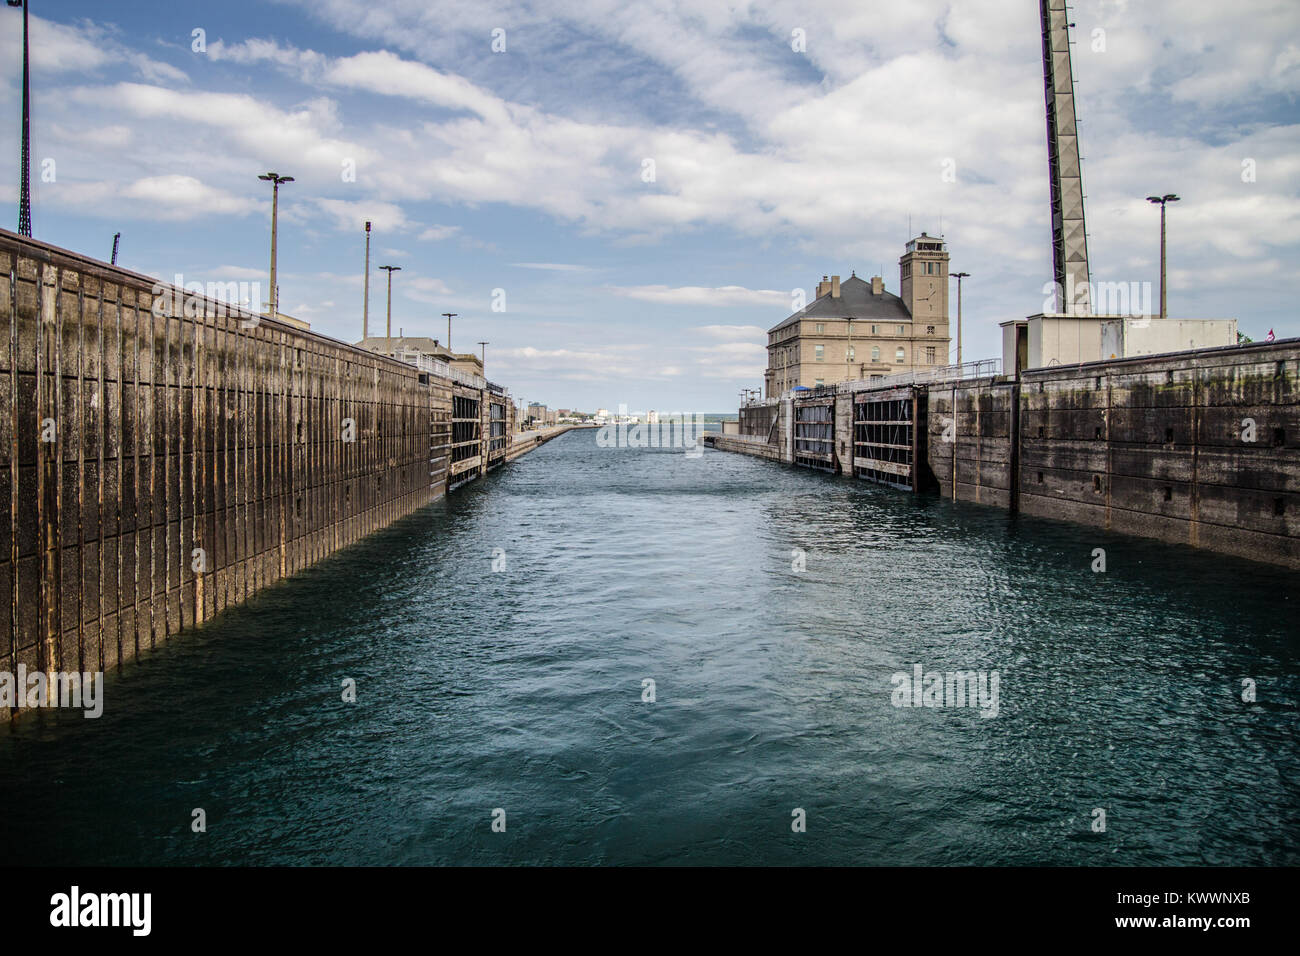 Sault Sainte Marie, Michigan, USA - 9 août 2015 : niveau de l'eau à travers le monde célèbre International Soo Locks au Michigan. Banque D'Images